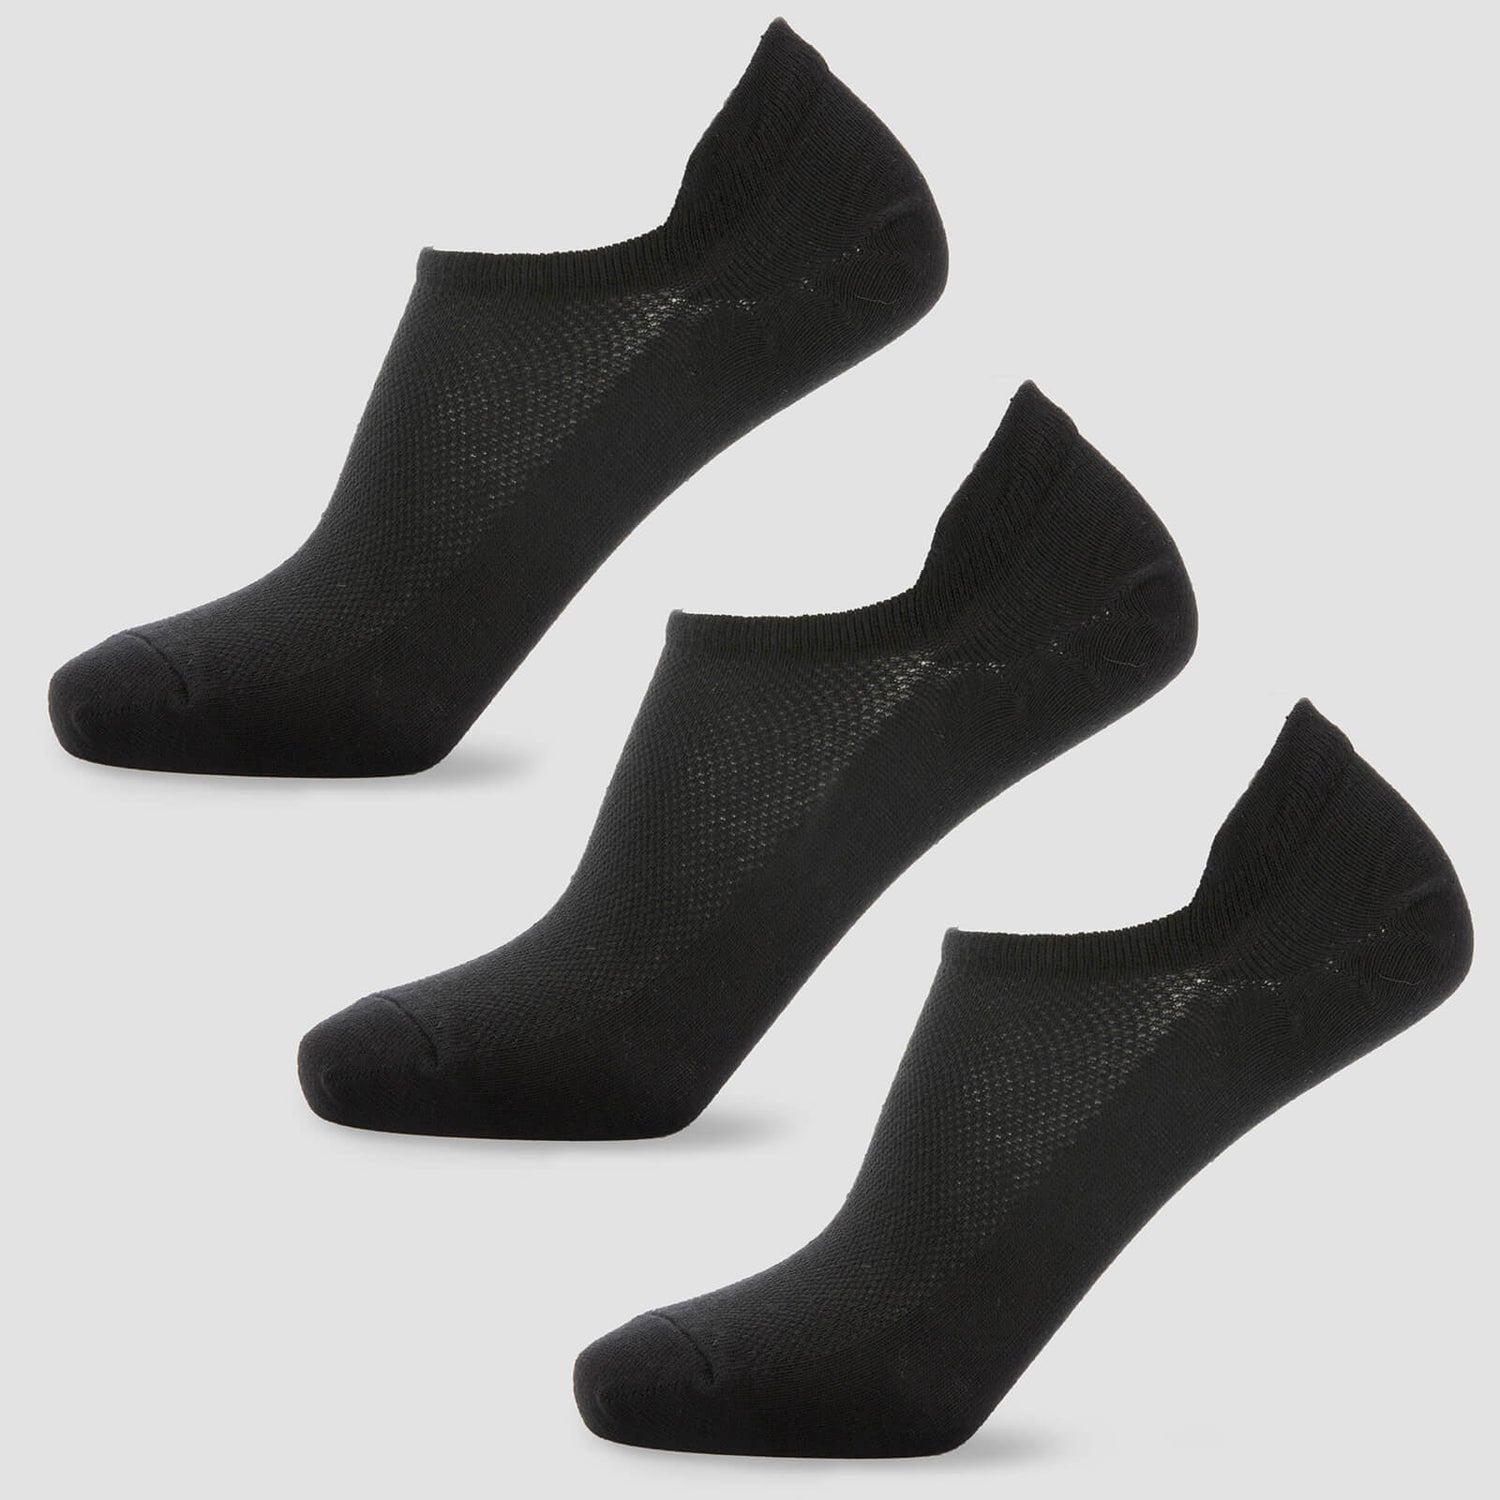 MP Women's Ankle Socks - Black (3 Pack) - UK 7-9